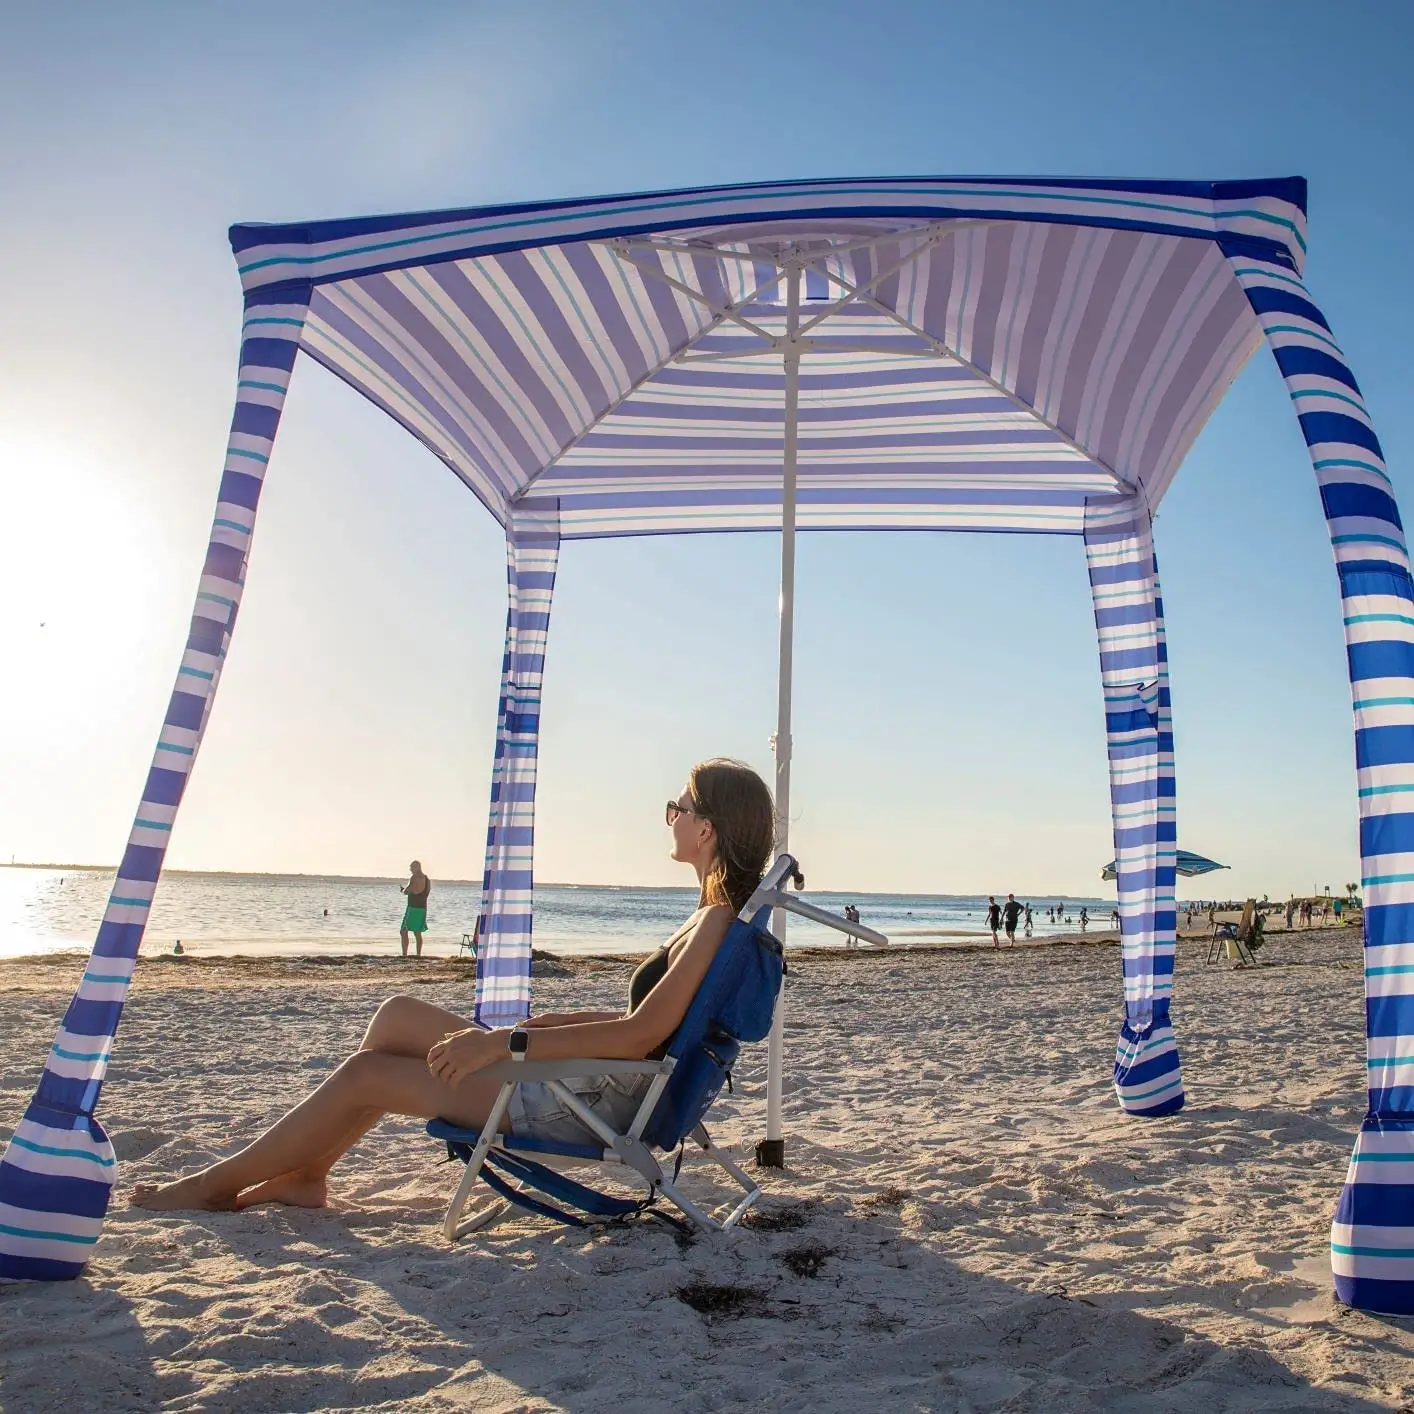 مخصص طباعة 4 أرجل 6 أقدام في الهواء الطلق المحمولة الشاطئ كابانا الخيام الرياح مربع الشمس المأوى مظلة الشاطئ كابانا